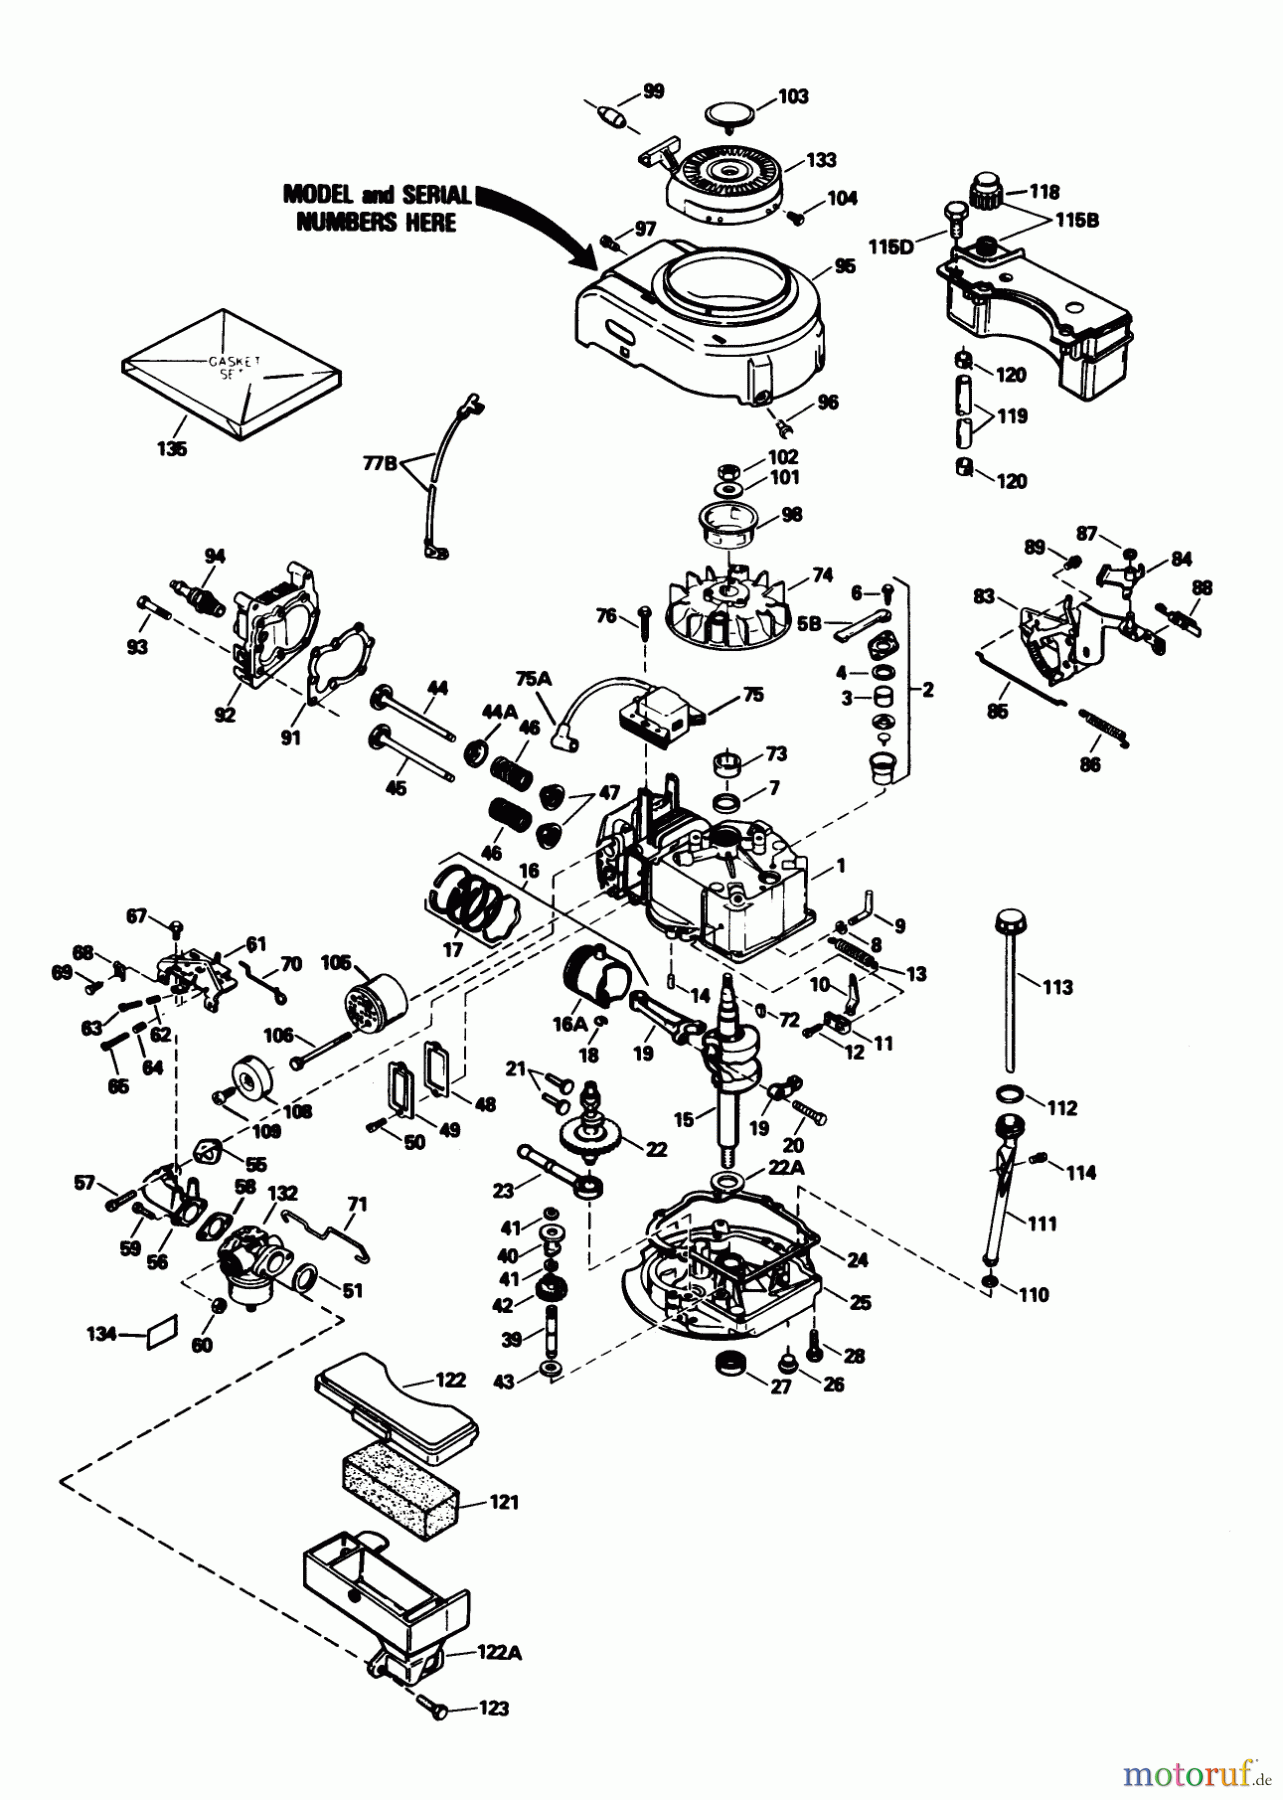  Toro Neu Mowers, Walk-Behind Seite 1 16775 - Toro Lawnmower, 1989 (9000001-9999999) ENGINE TECUMSEH MODEL NO. TVS100-44016B